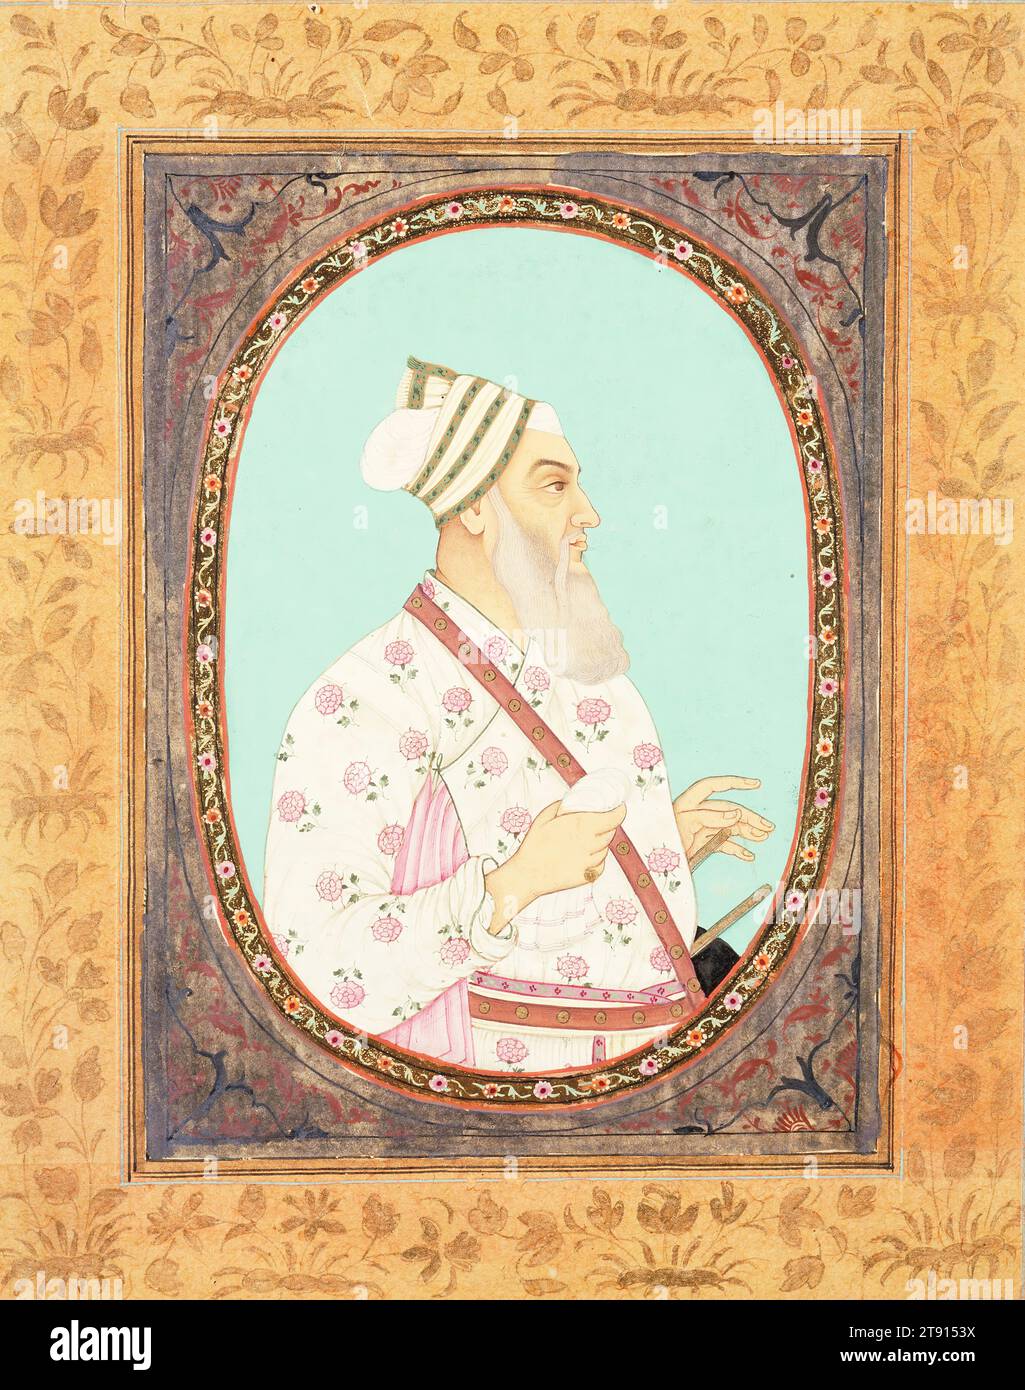 Porträt von Nawah General Firoz Khan, Anfang des 18. Jahrhunderts, 7/8 x 3/8 cm (20 x 16,19 cm), undurchsichtige Aquarelle und Gold auf Papier, Indien, 18. Jahrhundert, dieses fein ausgeführte Porträt von General Firoz Khan, einem Adligen aus dem 17. Jahrhundert und Mitglied des Golkonda-Hofes im Deckan, zeigt, dass die persisch inspirierte Malerei auf Golkonda blühte, bevor der Mogulherrscher Aurangzeb sie 1687 endgültig eroberte. Die Herrscher des Deccan-Plateaus waren muslimisch, wie die Mogulen, während die Mogulen Sunniten waren und von der ostiranischen und zentralasiatischen Malerei beeinflusst wurden Stockfoto